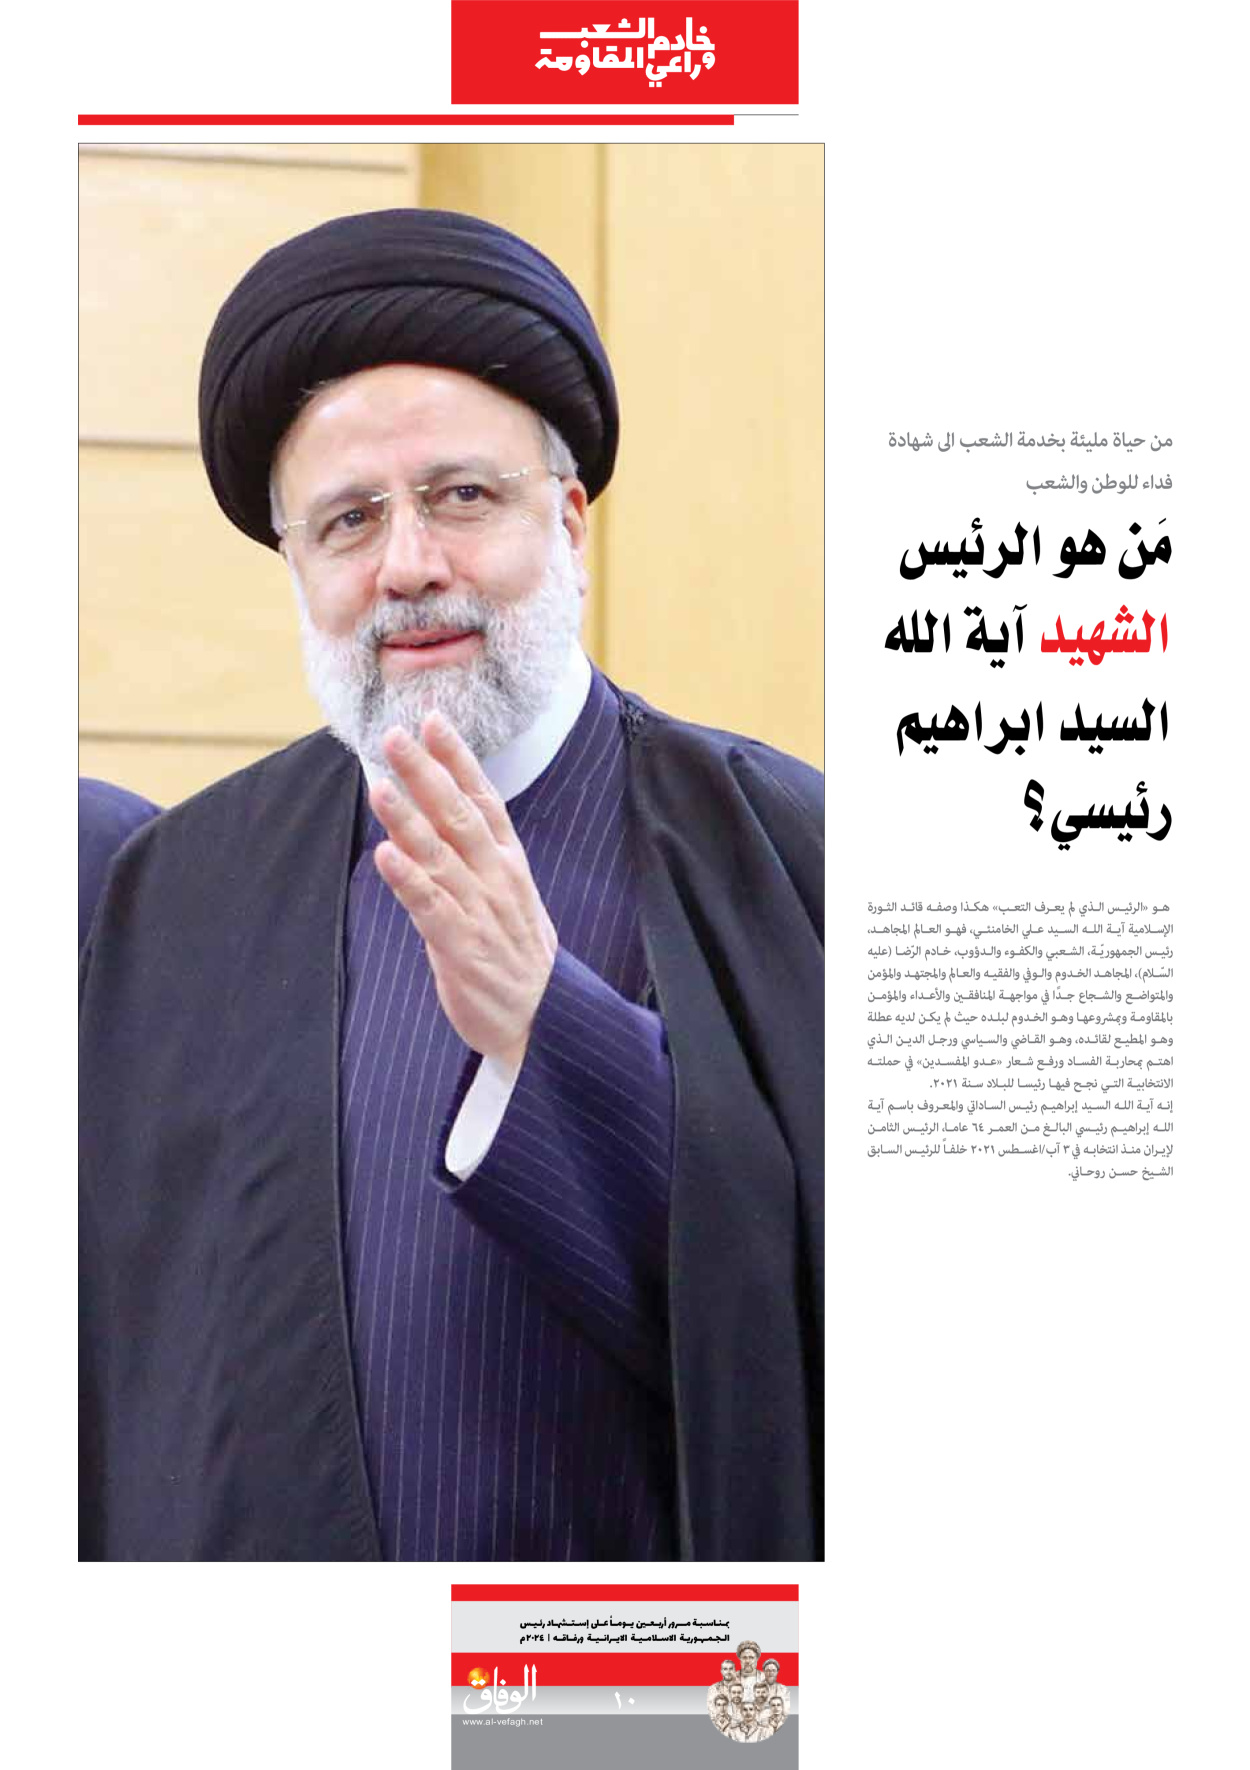 صحیفة ایران الدولیة الوفاق - ملحق ویژه نامه چهلم شهید رییسی - ٢٩ يونيو ٢٠٢٤ - الصفحة ۱۰